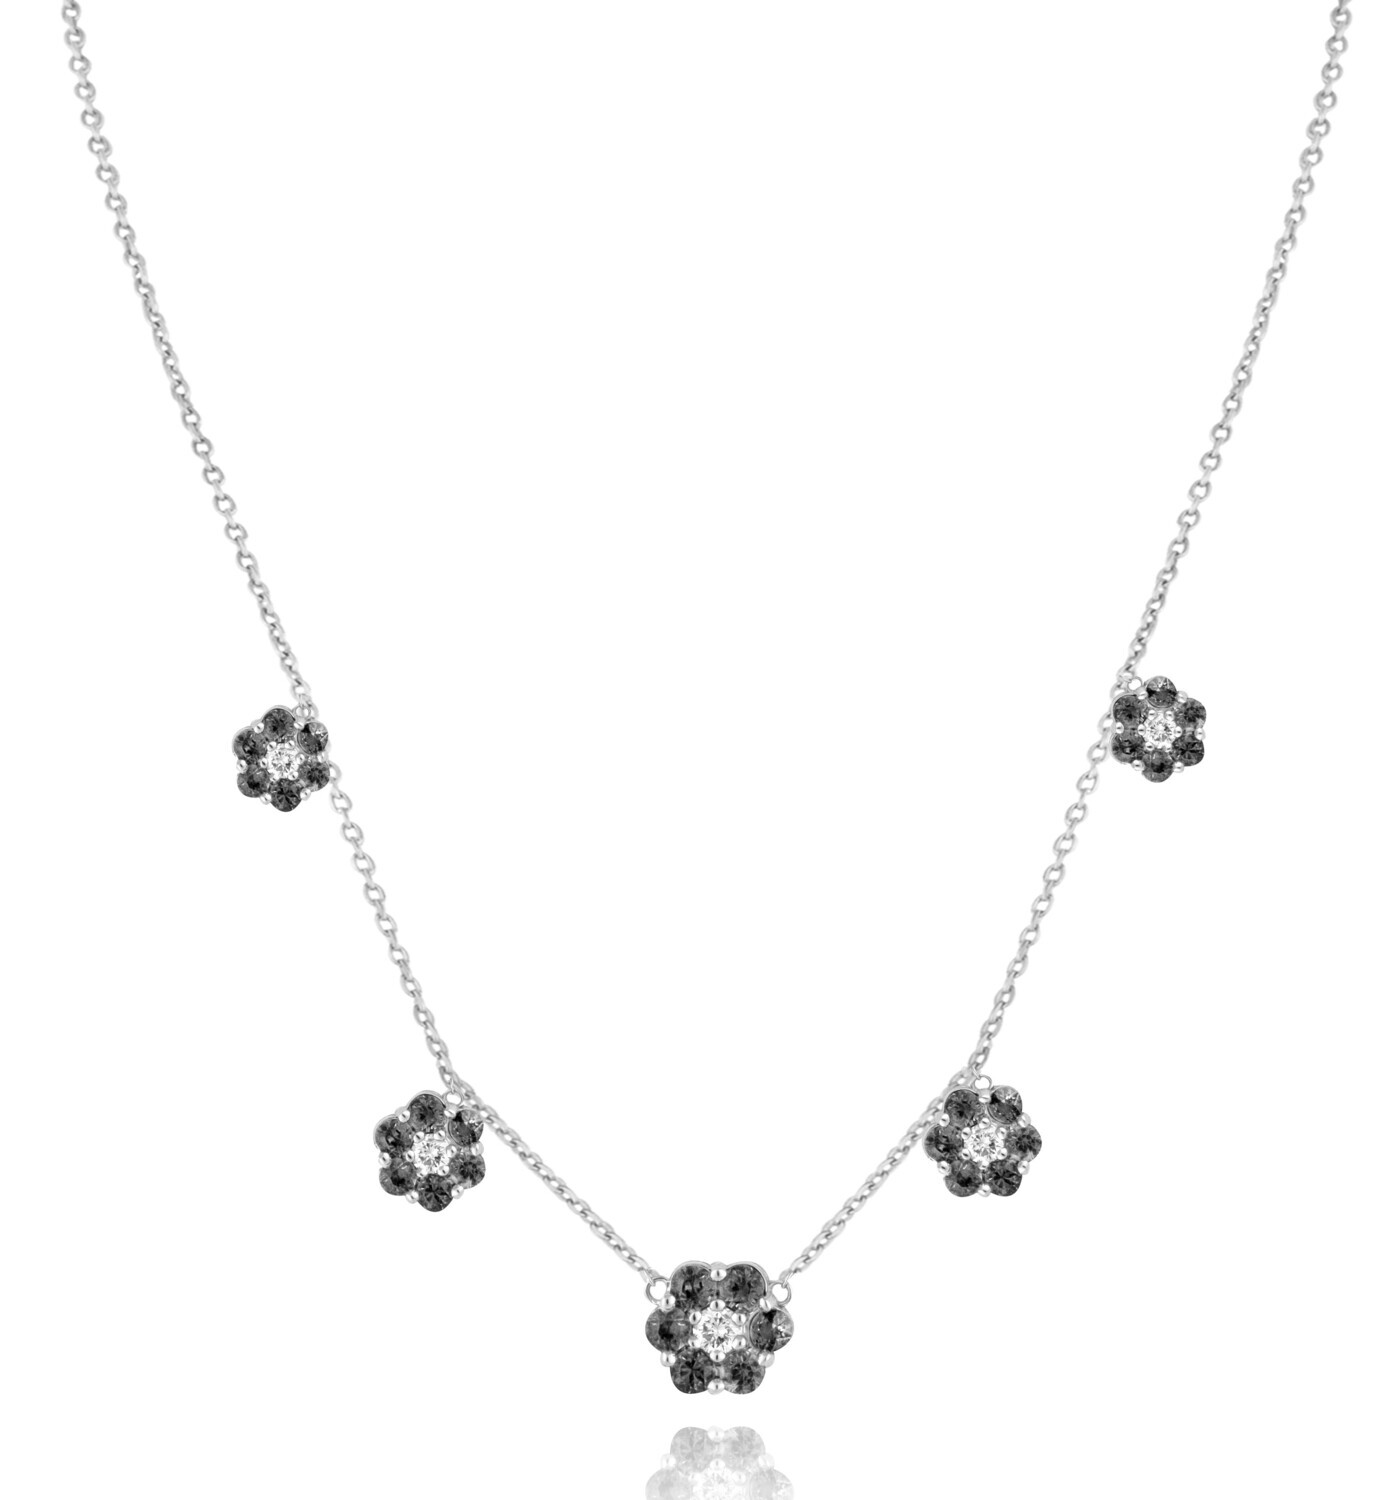 Eternal Diamond Flowers Necklace with Black Diamond